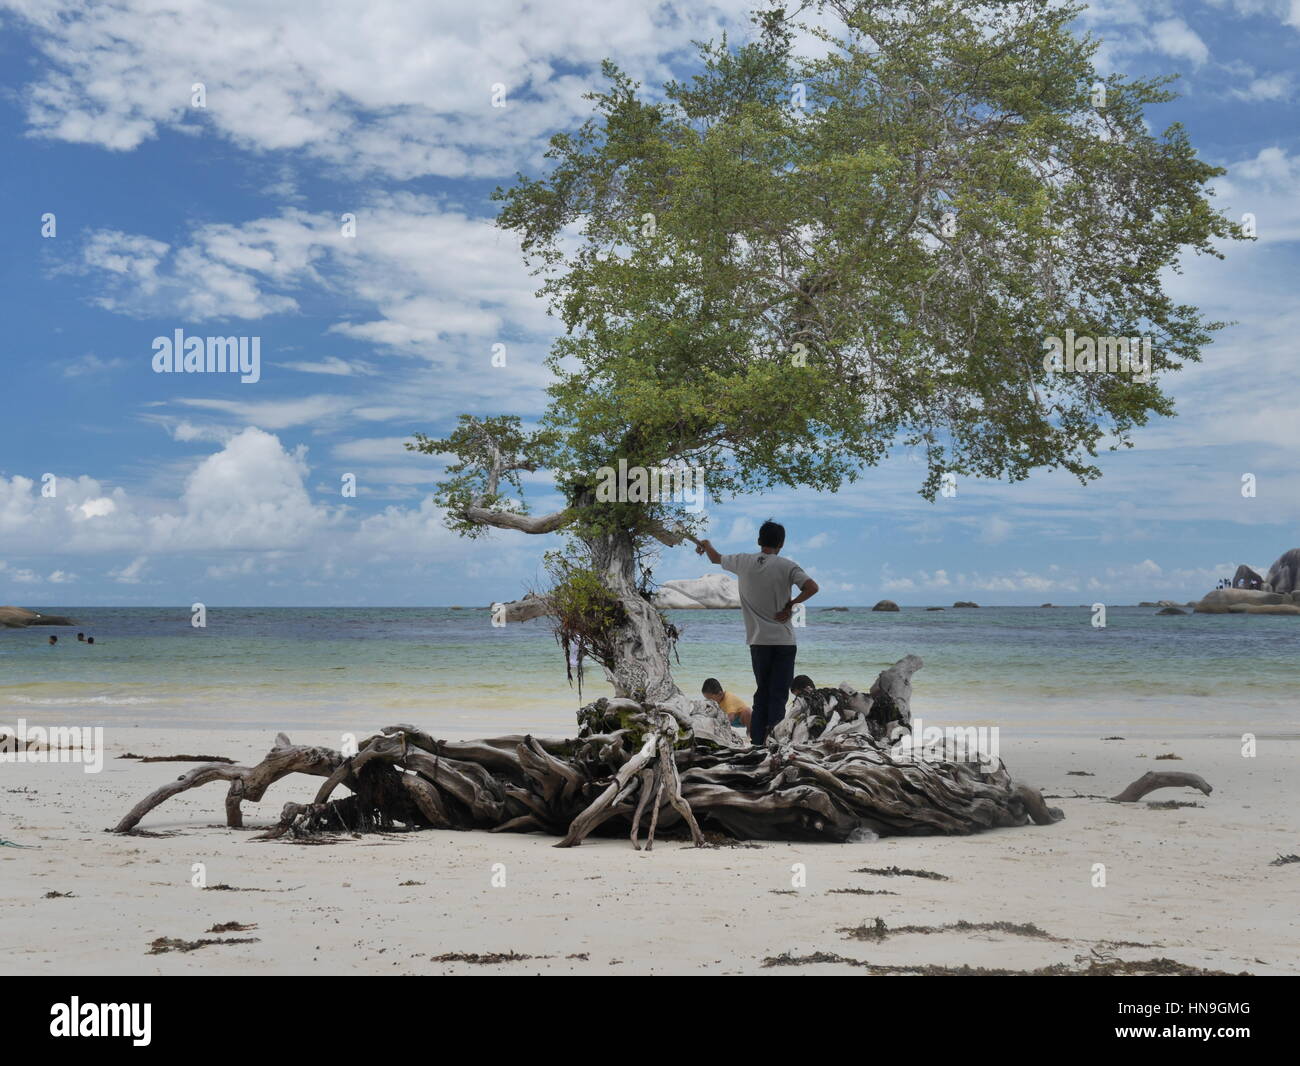 Ver og Belitong Isla. Uno de los mejores destinos de playa en Indonesia. Foto de stock